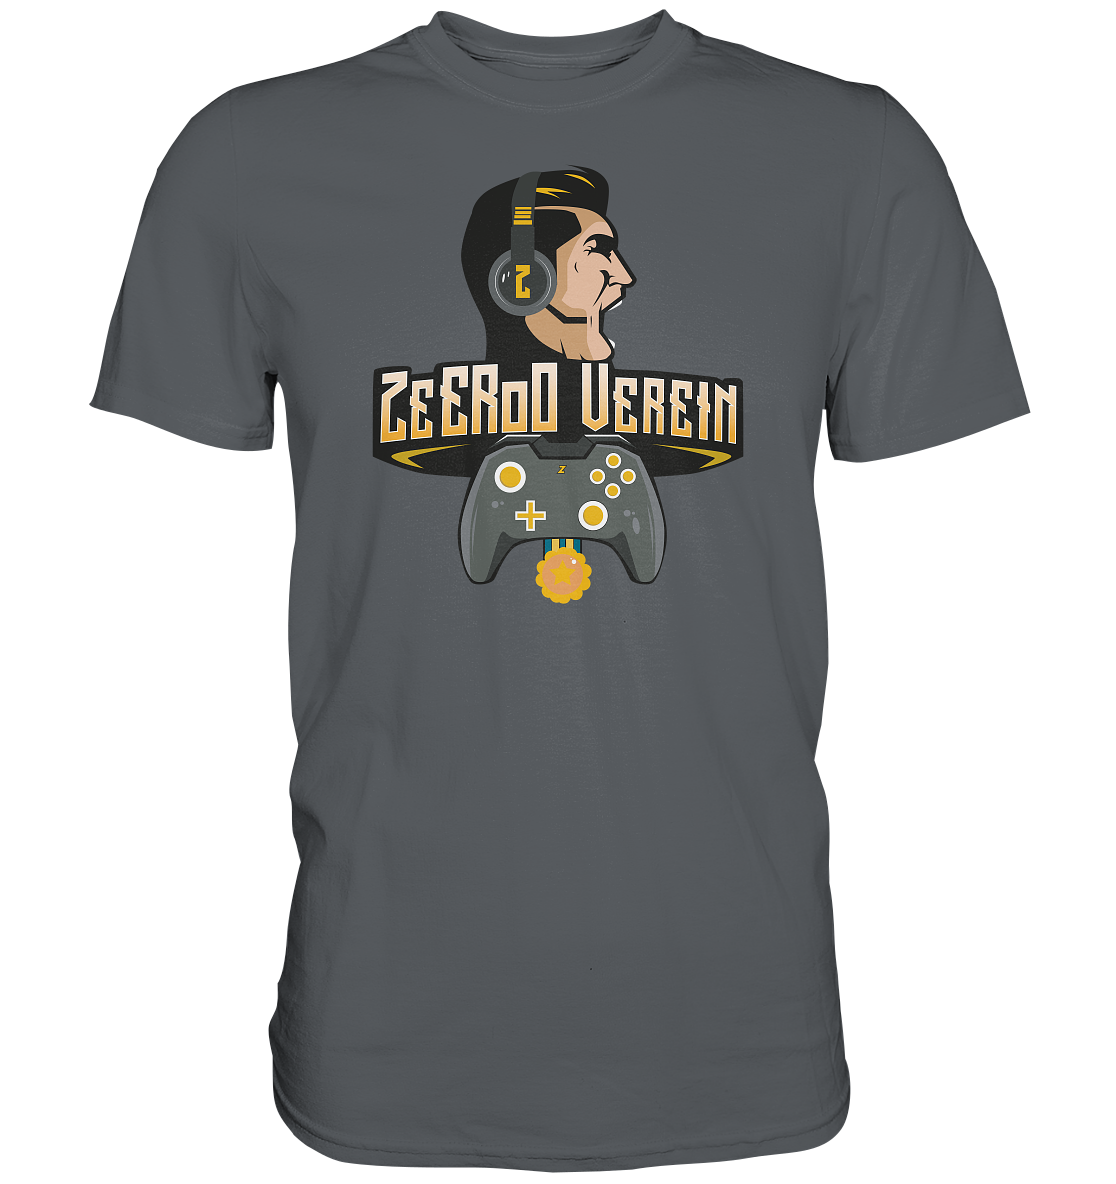 ZEEROO VEREIN - Basic Shirt